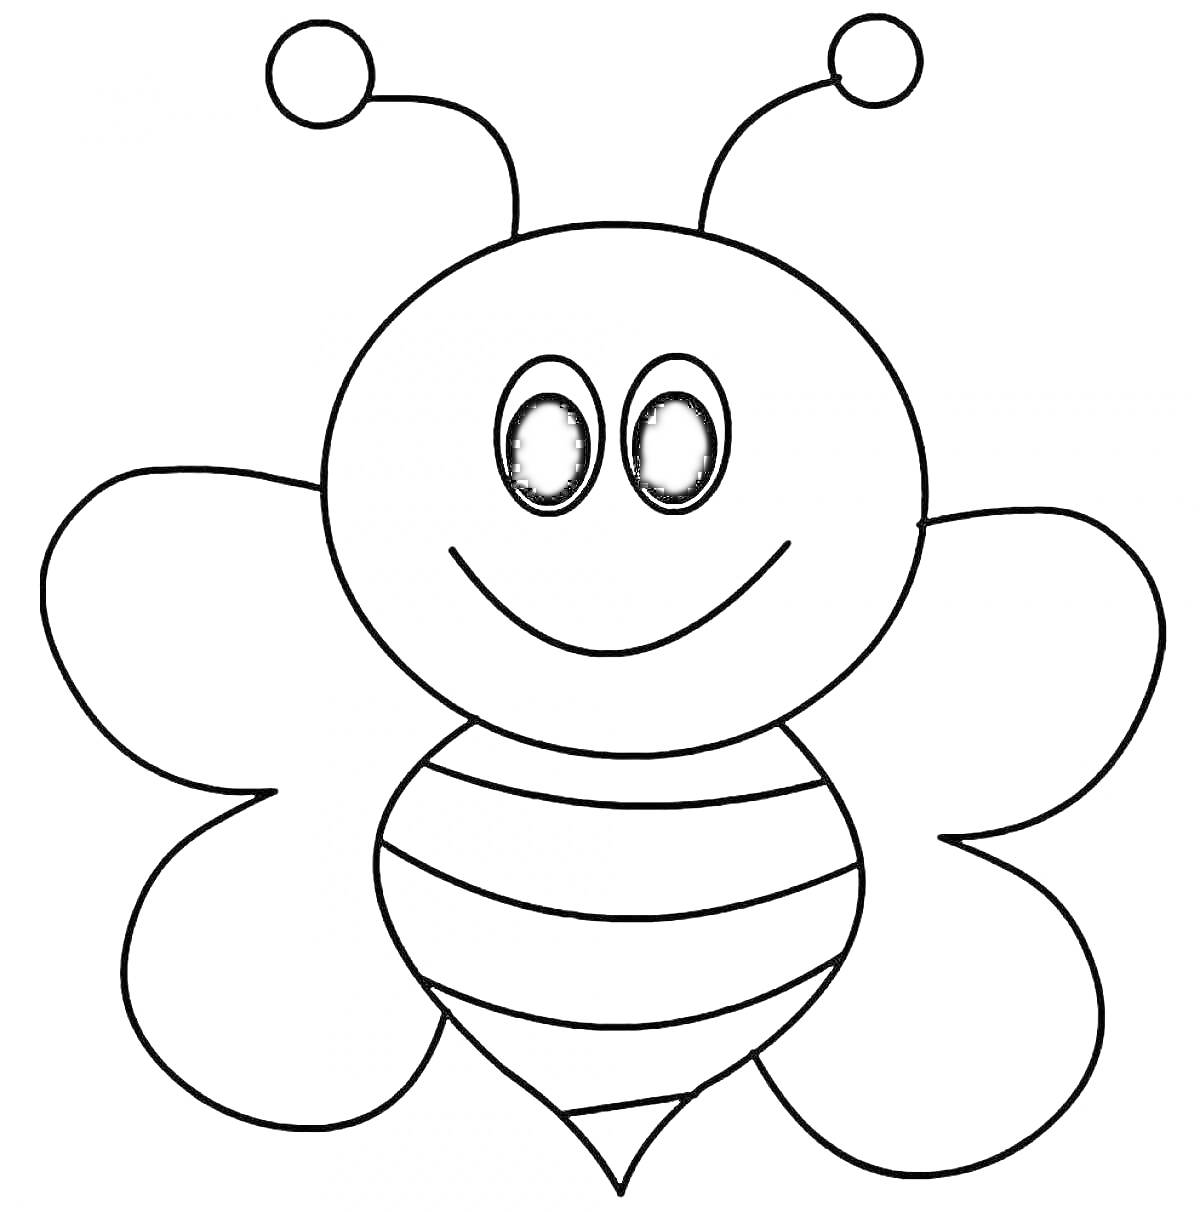 Раскраска Пчелка с усиками, крыльями и полосатым телом